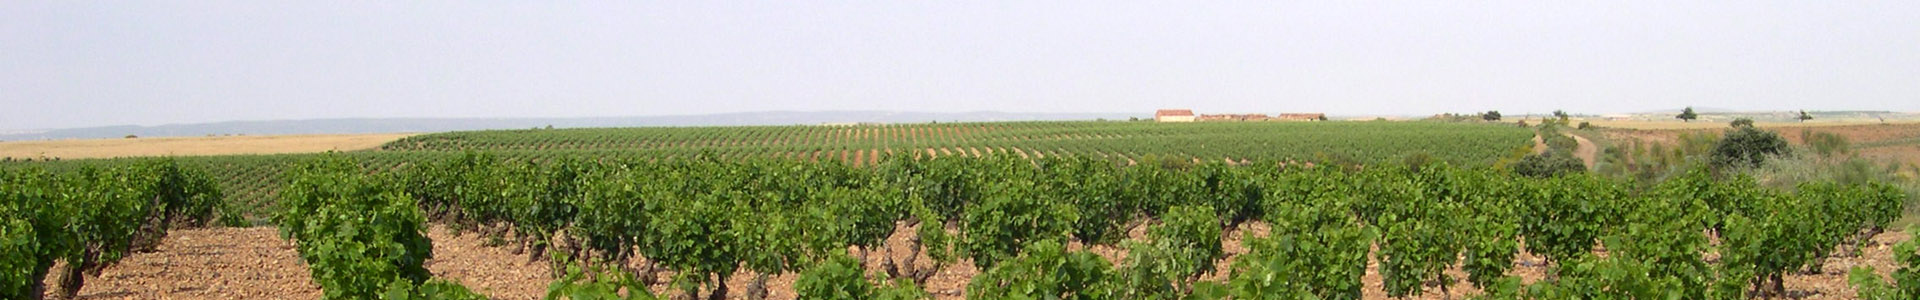 乌尔贝索古居酒庄。佳丽酿受保护原产地品名，萨拉戈萨（西班牙）。